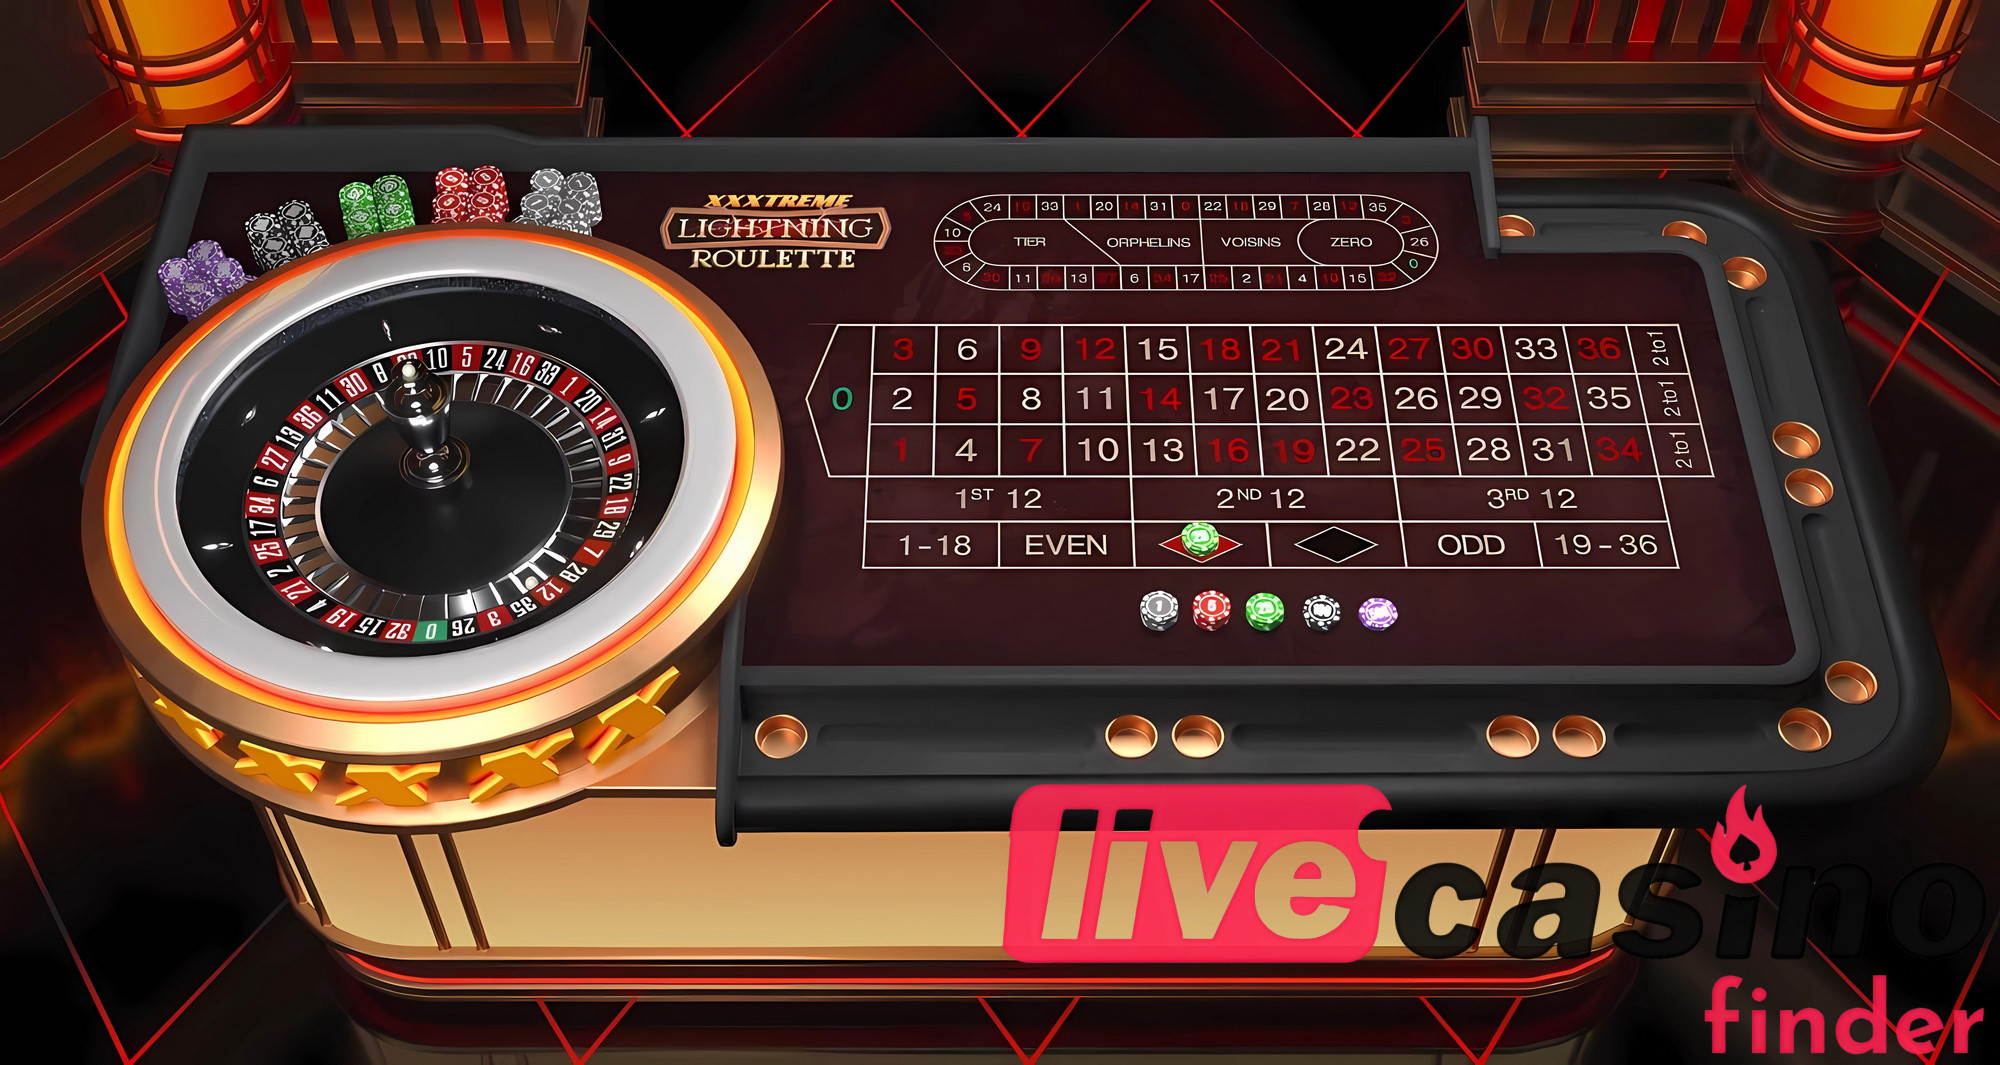 Igra Casino v živo XXXtreme Lightning Roulette.